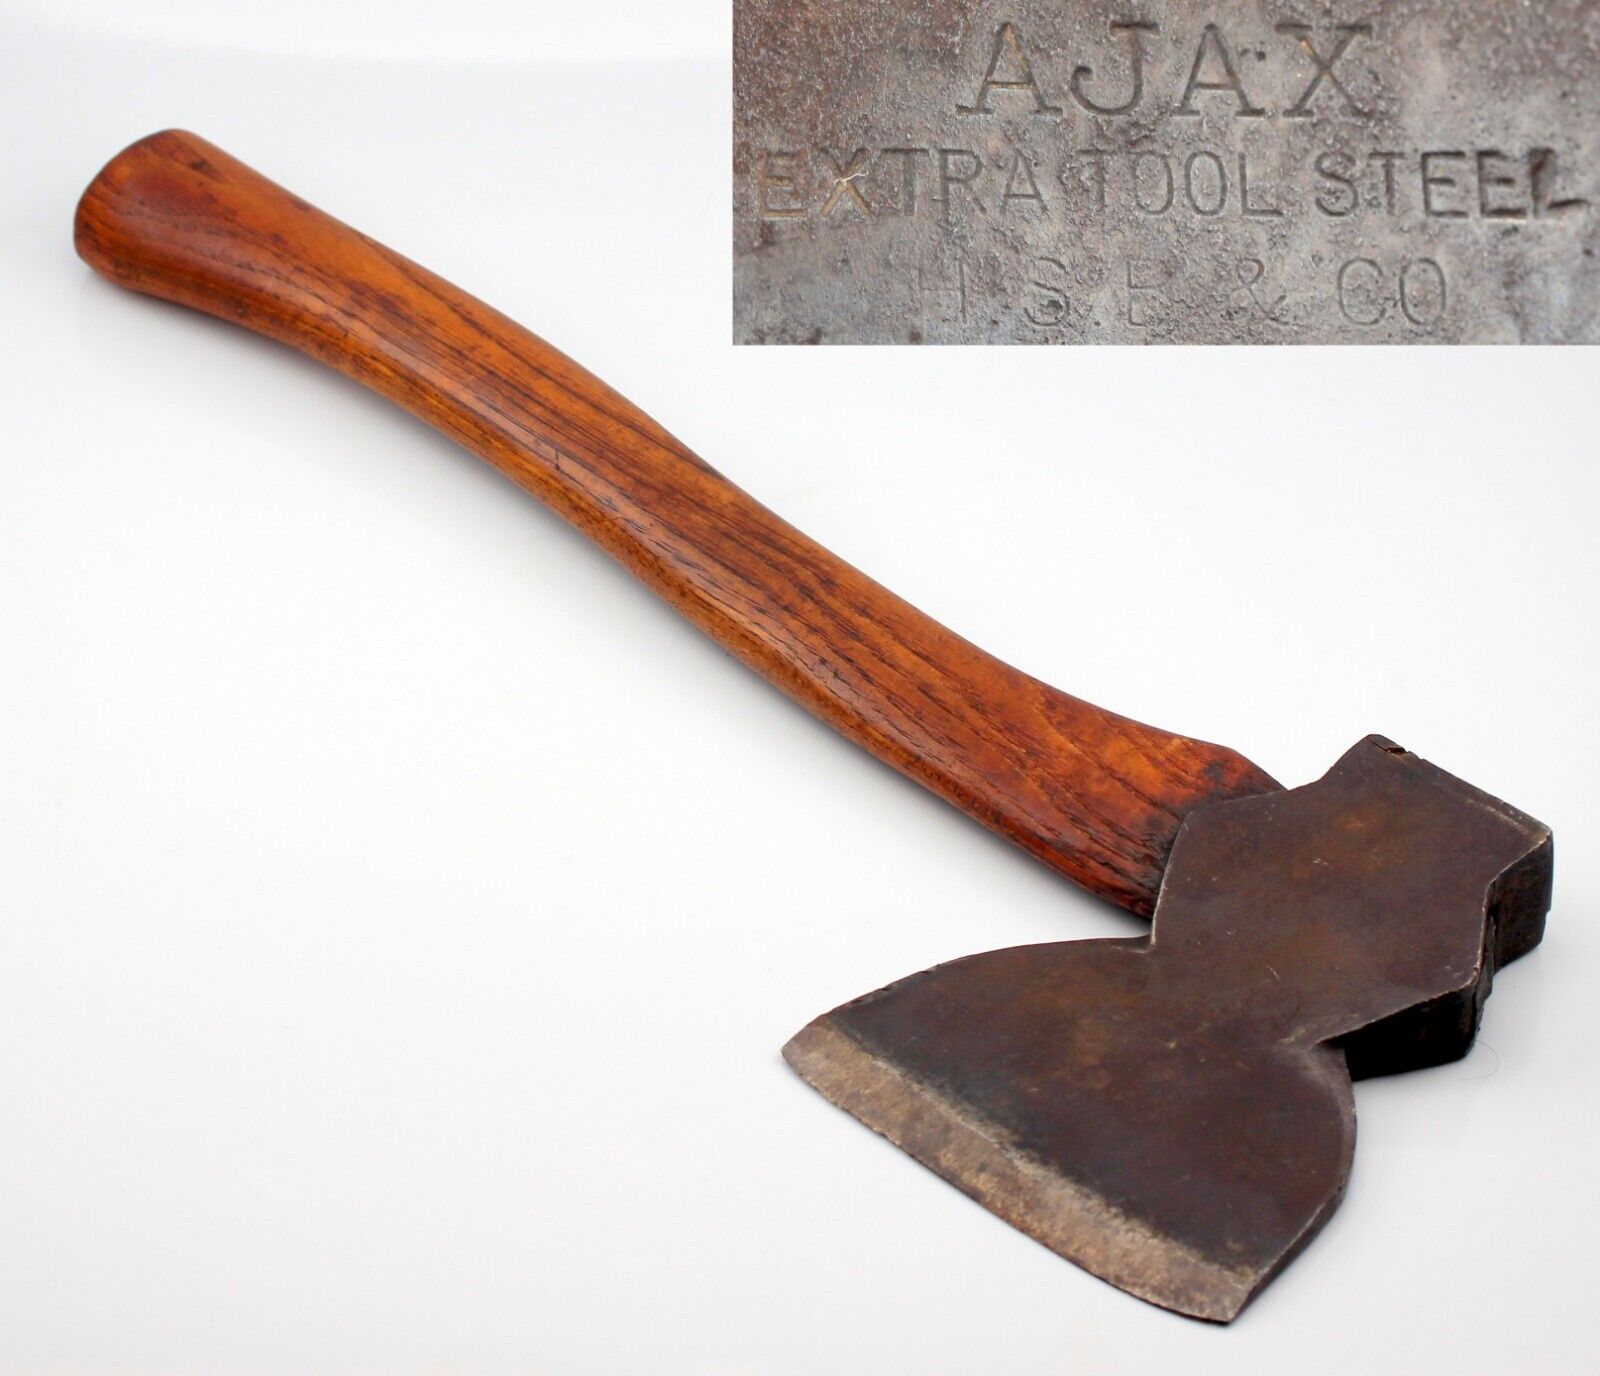 c.1895 HSB Co. Antique AJAX Extra Tool Steel Single Bit Broad Hewing Axe Hatchet